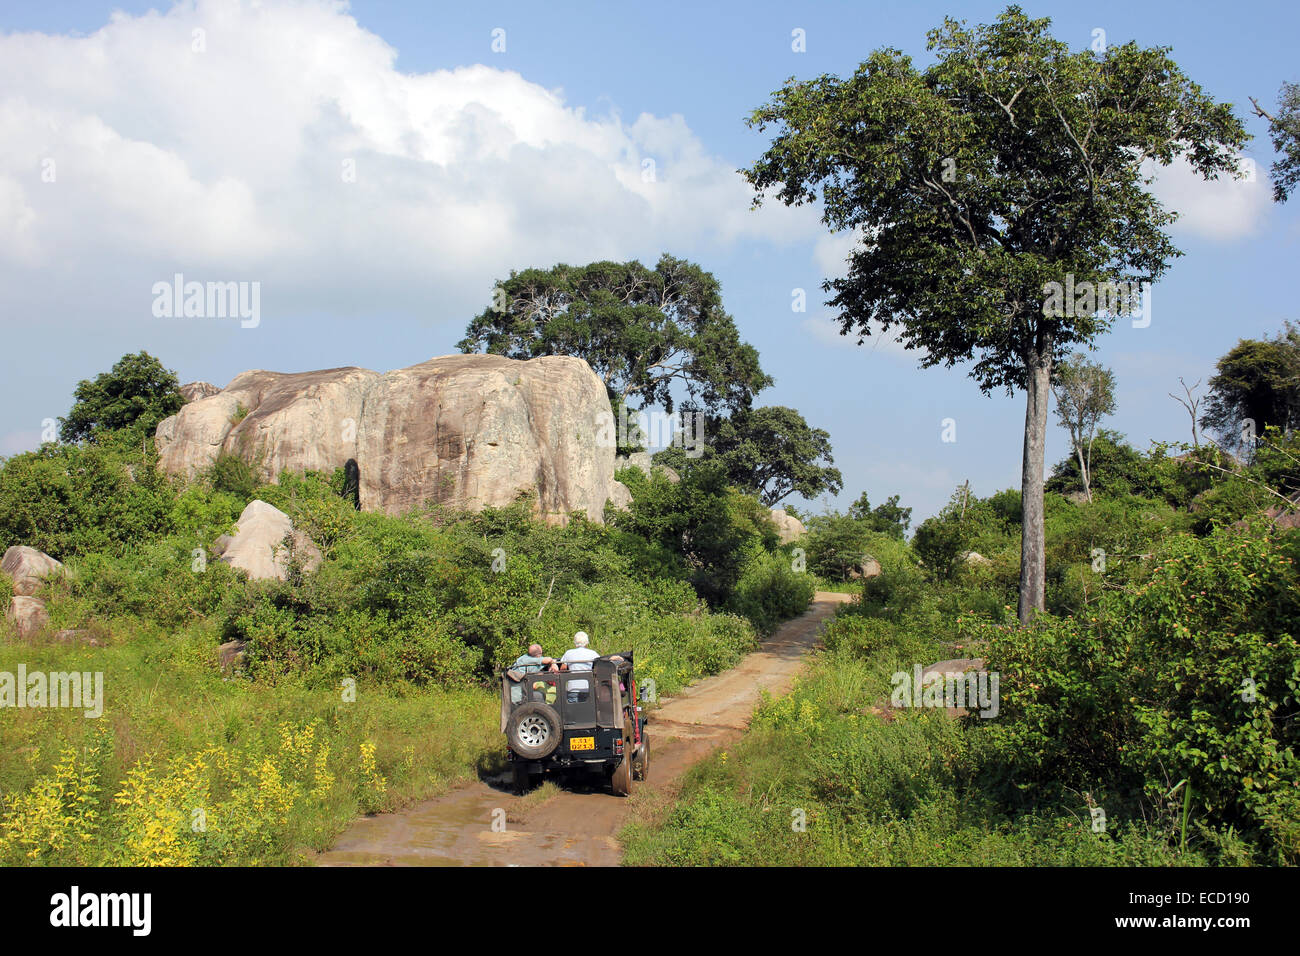 Turisti che si godono un safari in jeep in Hurulu Eco-Park una società internazionale di riserva della biosfera, Sri Lanka Foto Stock